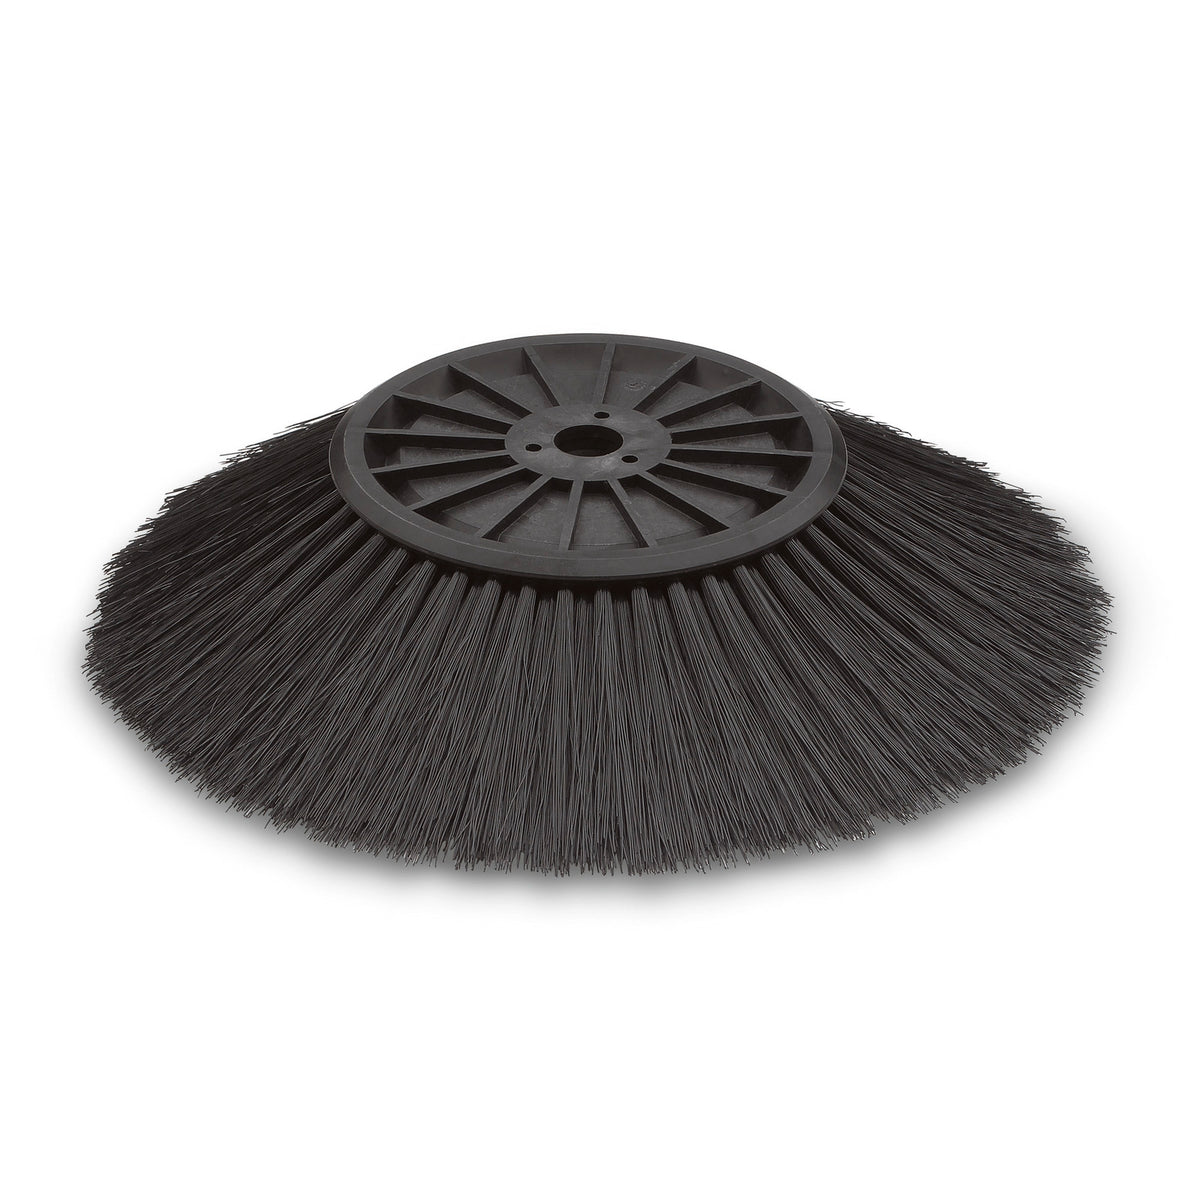 Karcher Hard Side Broom (Black)